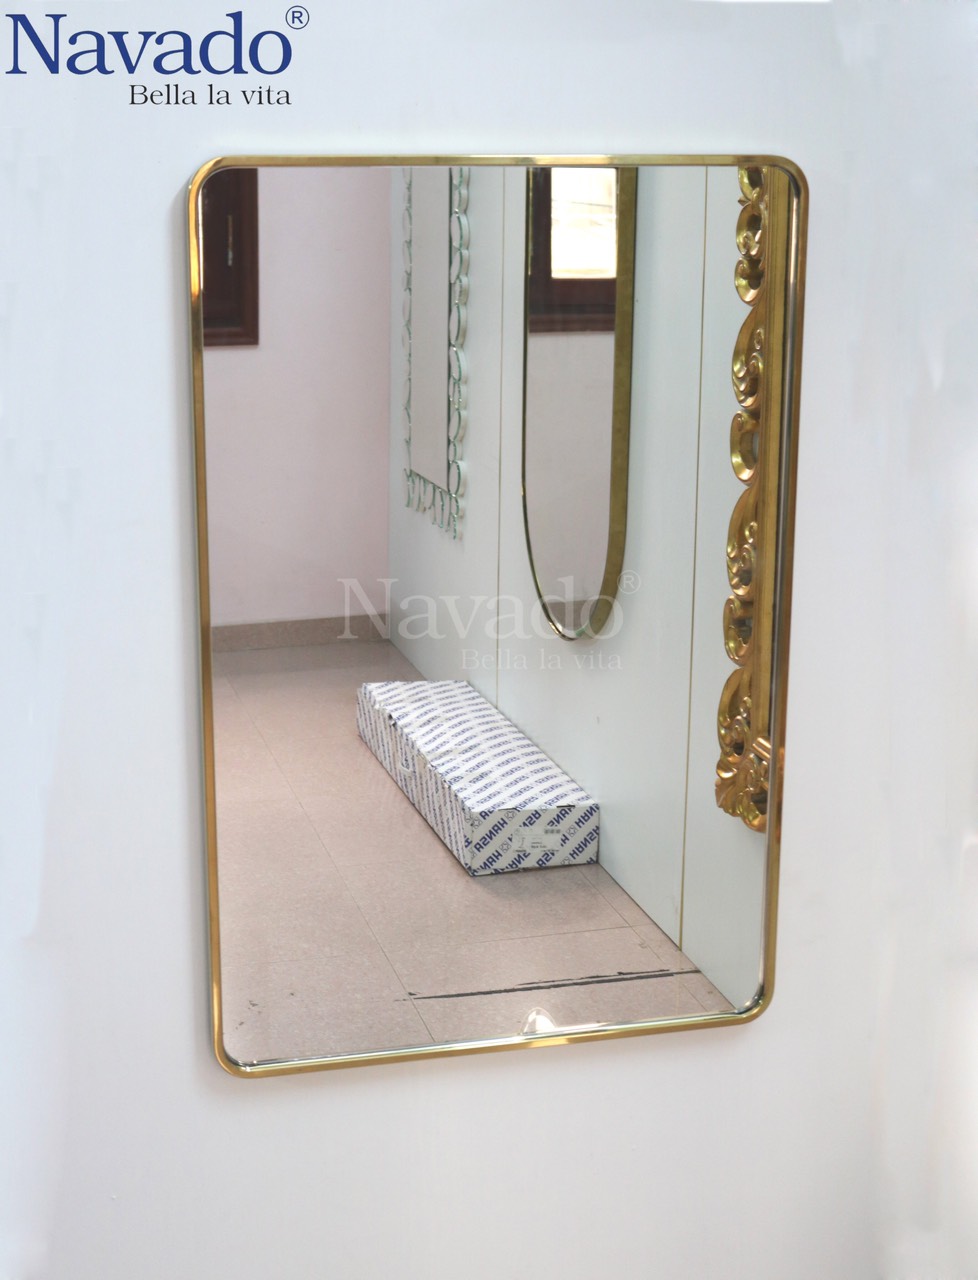 Gương phòng tắm khung inox vàng là sản phẩm giúp tôn lên vẻ đẹp sang trọng và quý phái cho phòng tắm. Với thiết kế khung inox vàng sang trọng và chất liệu kính cường lực chịu lực tốt, sản phẩm đem lại cảm giác thoải mái cho người sử dụng trong khi sử dụng phòng tắm. Hãy cùng trang trí cho phòng tắm của bạn trở nên đẳng cấp và lịch sự hơn bằng sản phẩm gương phòng tắm khung inox vàng.